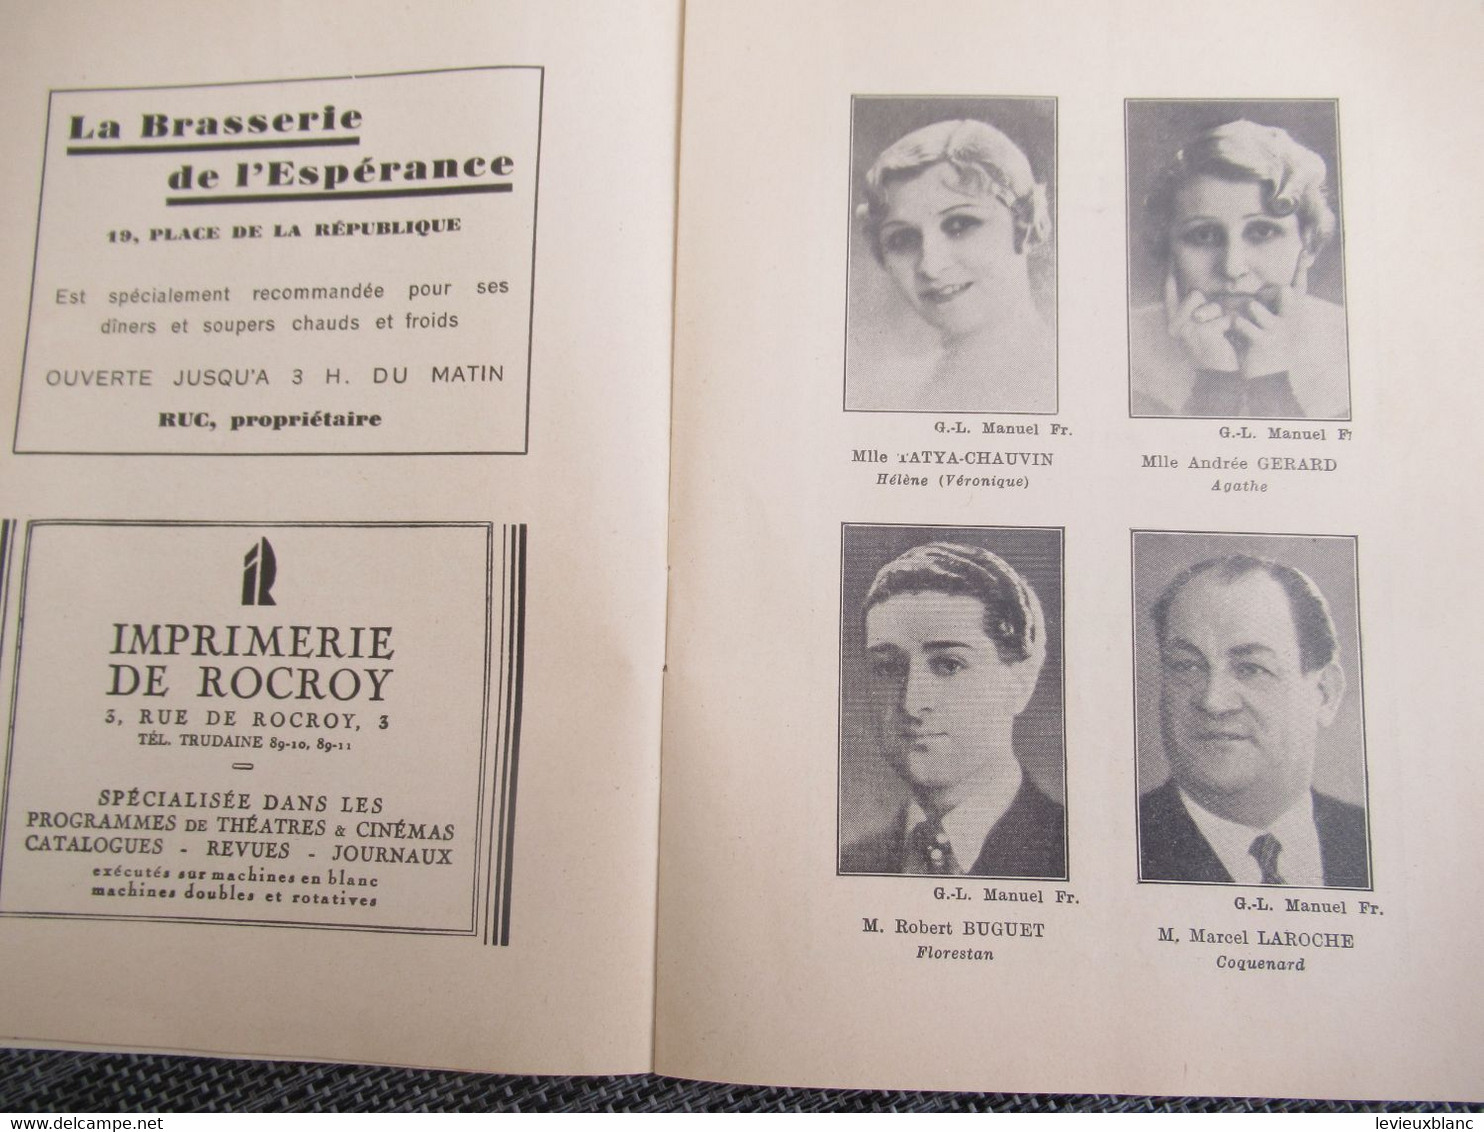 Programme Ancien De Théâtre/ALHAMBRA/ Véronique / Le Théâtre Des Opérettes/Vanloo & Duval/vers 1932              PROG293 - Programmes